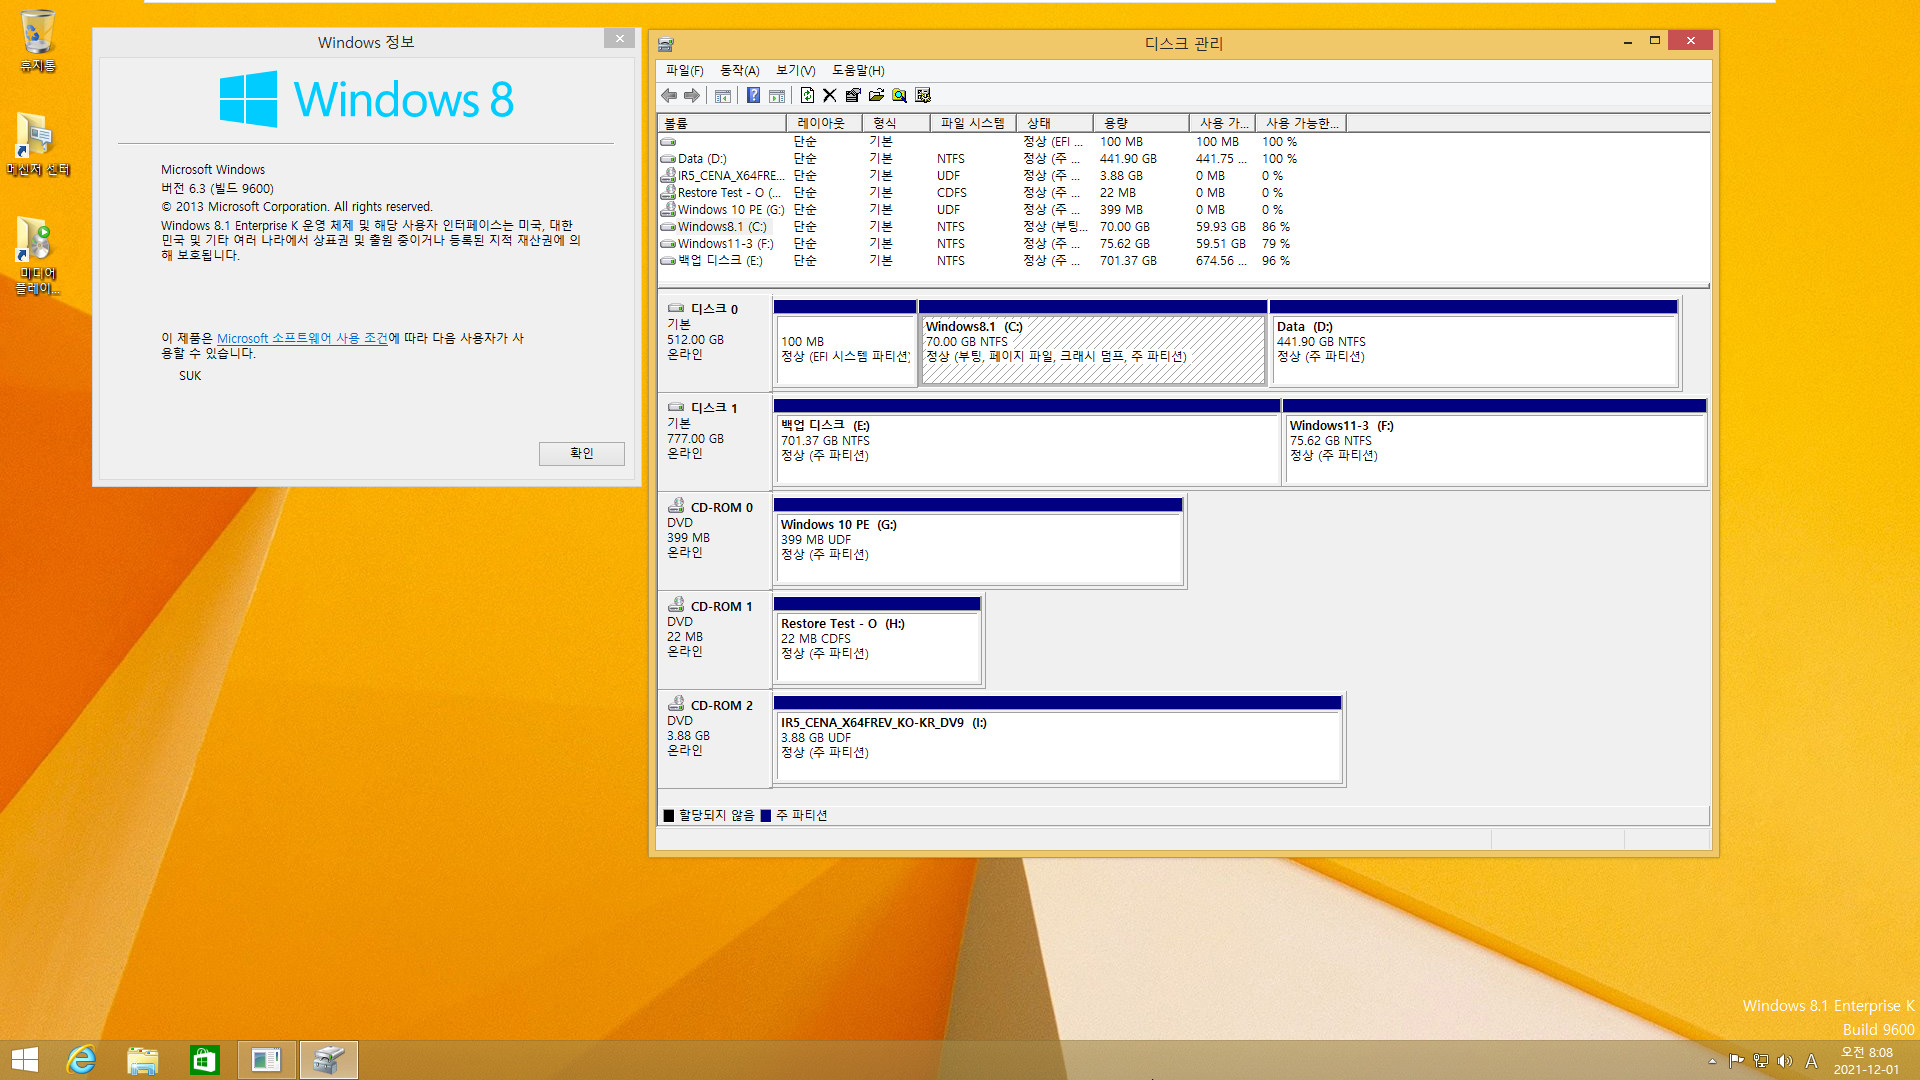 Windows 8.1은 여전히 같은 컴퓨터에서 다른 파티션에 복원하면 기존 윈도우와 복원한 윈도우 2개를 동시에 사용하는군요. 기존 C드라이브 문자만 삭제하면 정상 부팅됩니다 2021-12-01_080832.jpg